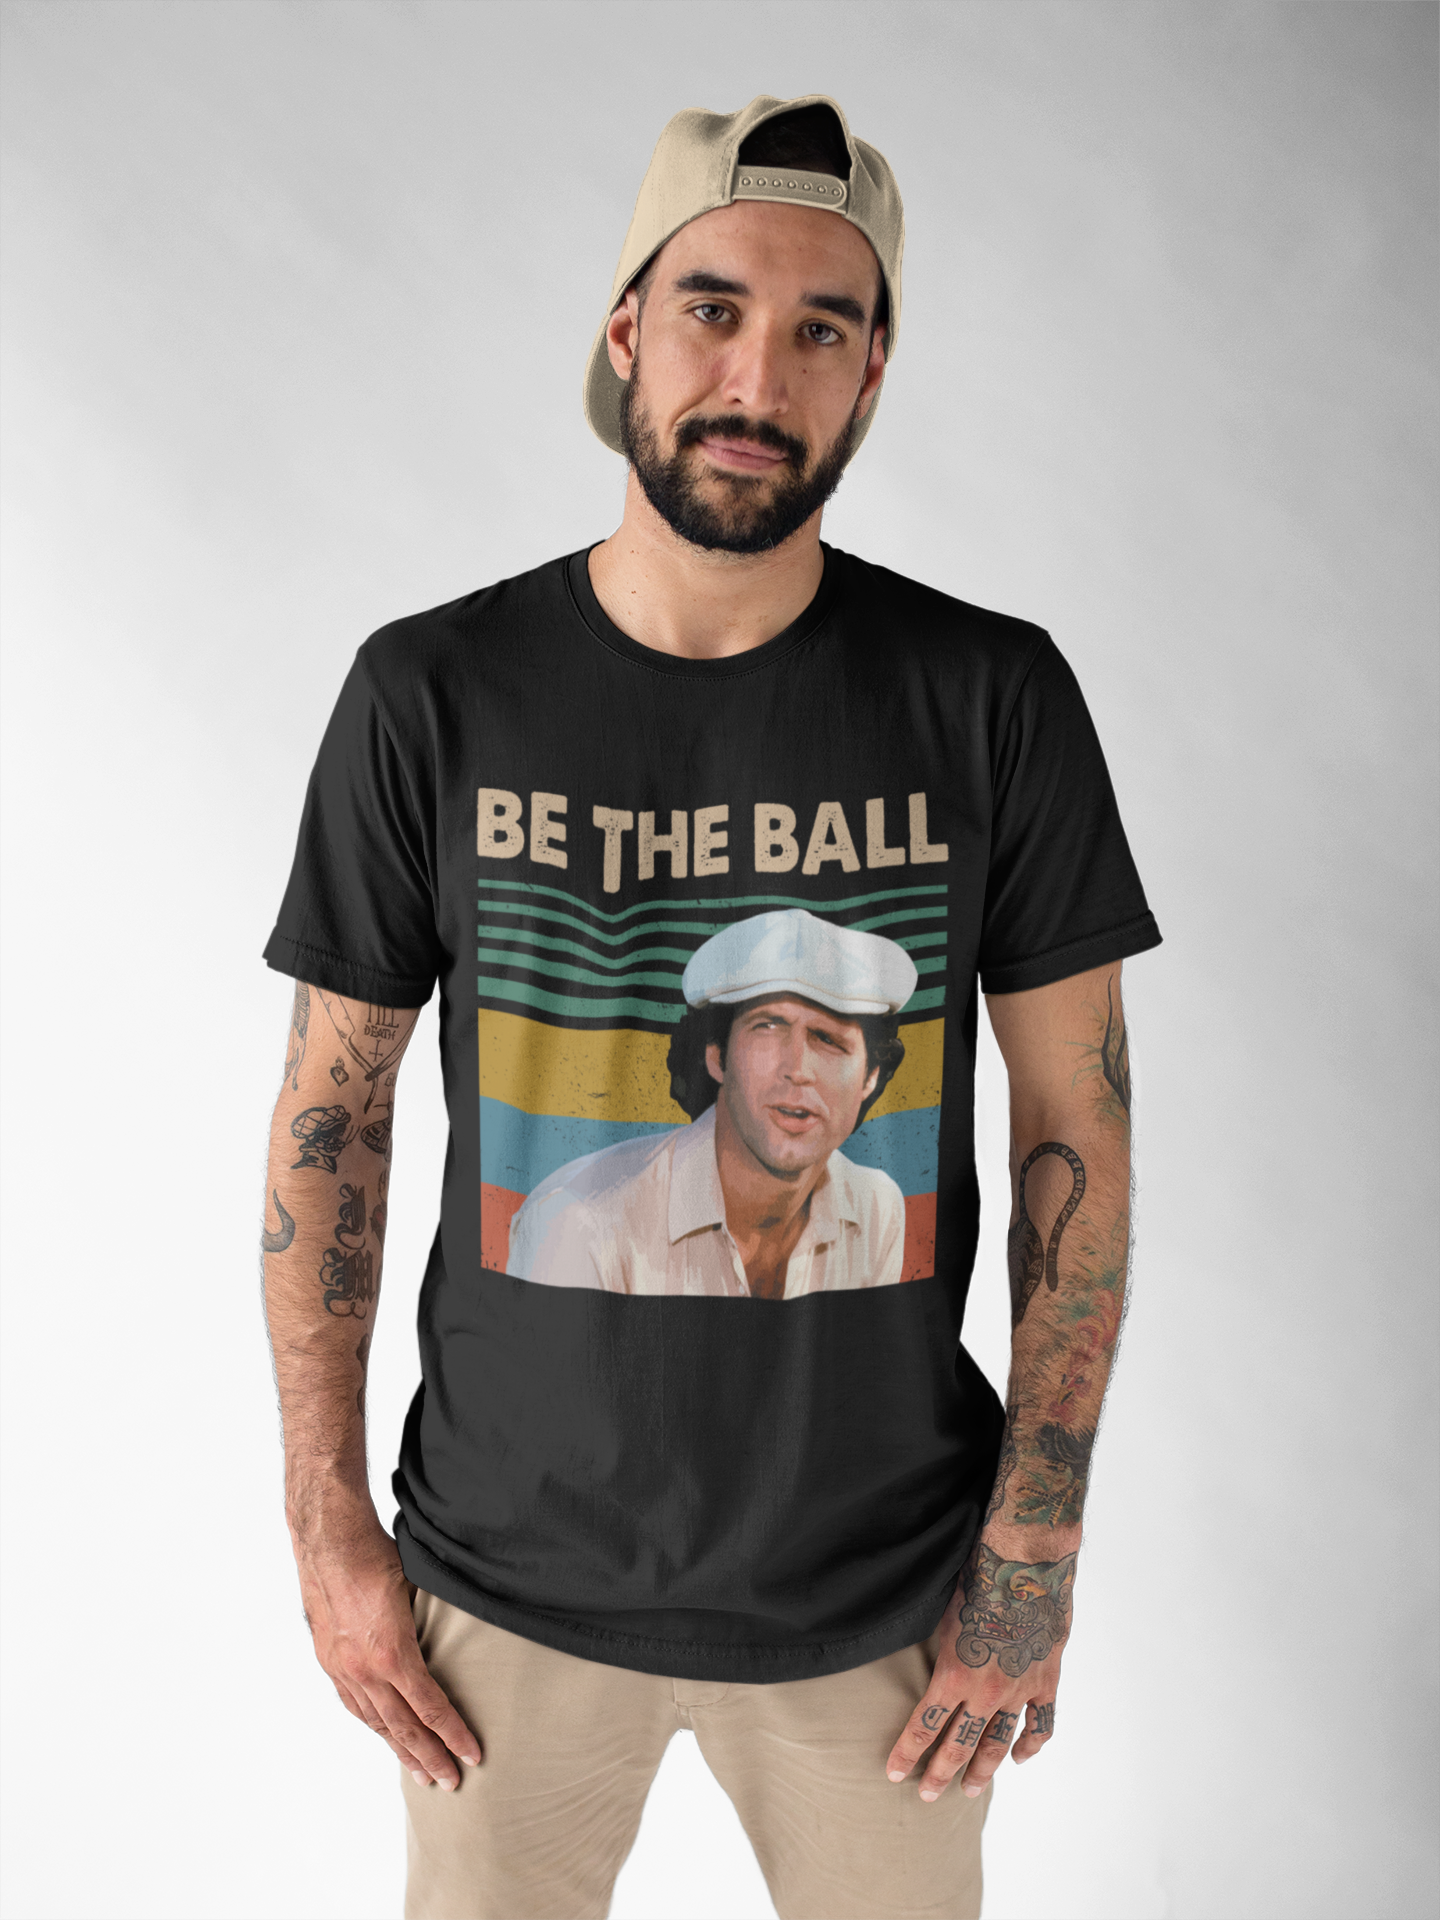 Caddyshack Vintage T Shirt, Ty Webb T Shirt, Be The Ball Tshirt